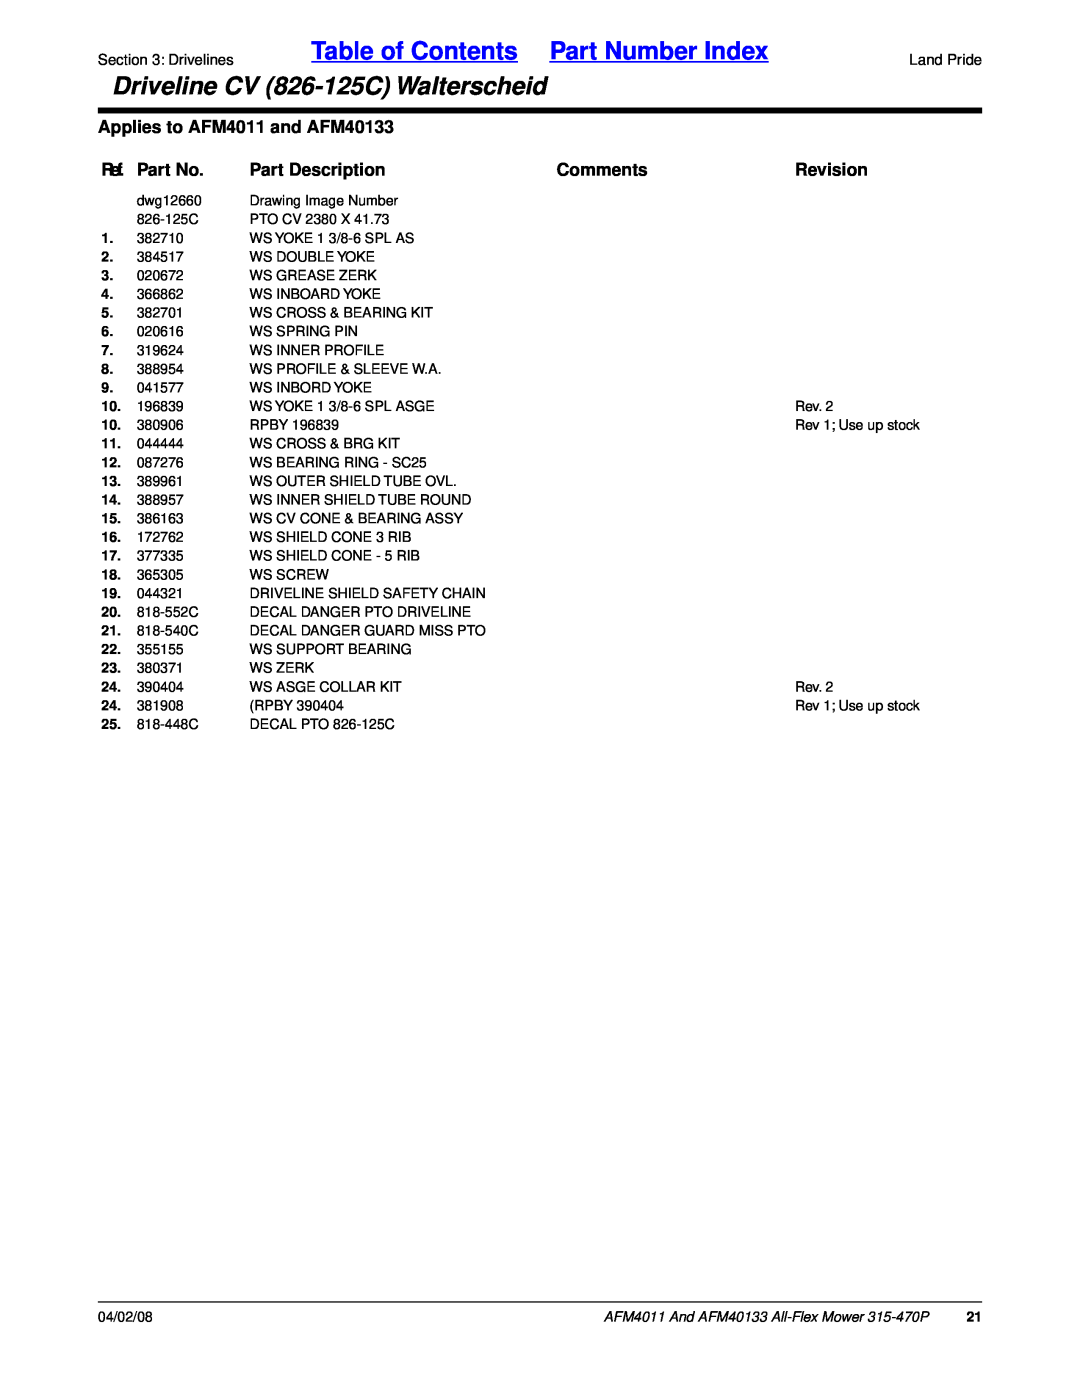 Land Pride AFM40133 Table of Contents Part Number Index, Driveline CV 826-125CWalterscheid, Ref. Part No, Part Description 